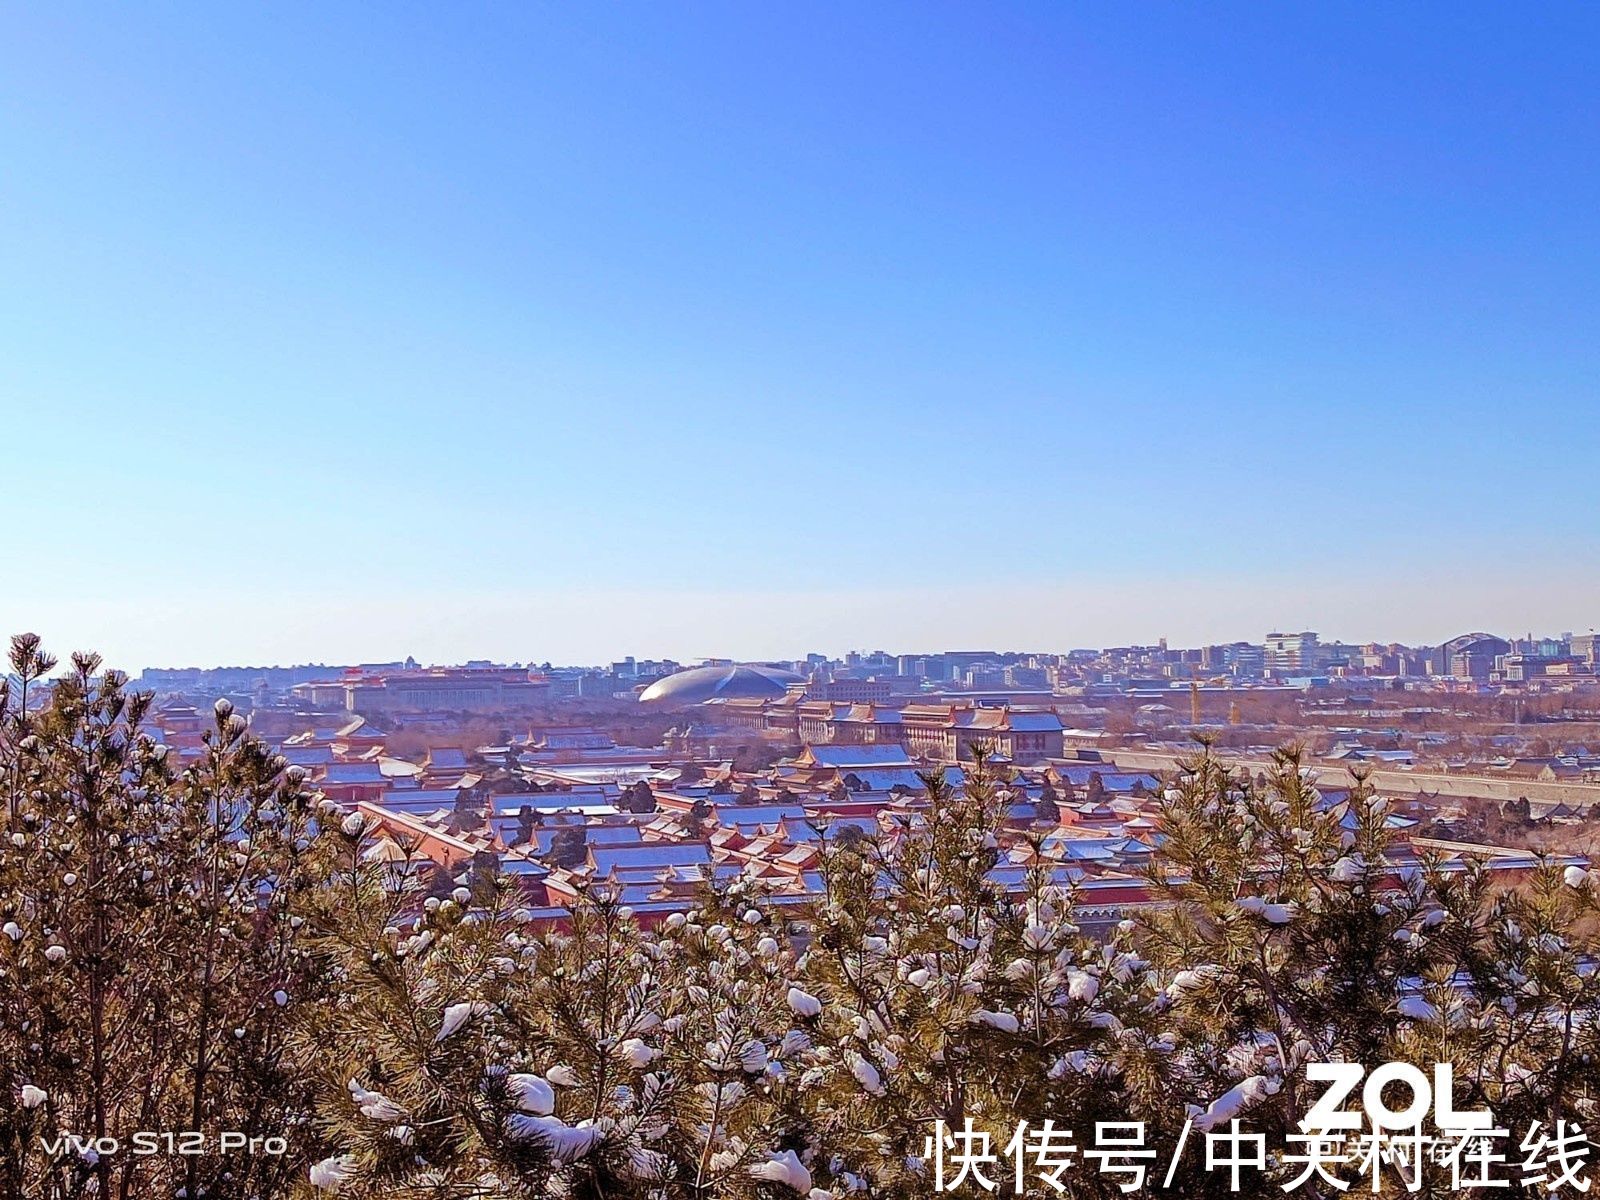 像素|一亿像素超清主摄 vivo S12 Pro记录雪后的北京城